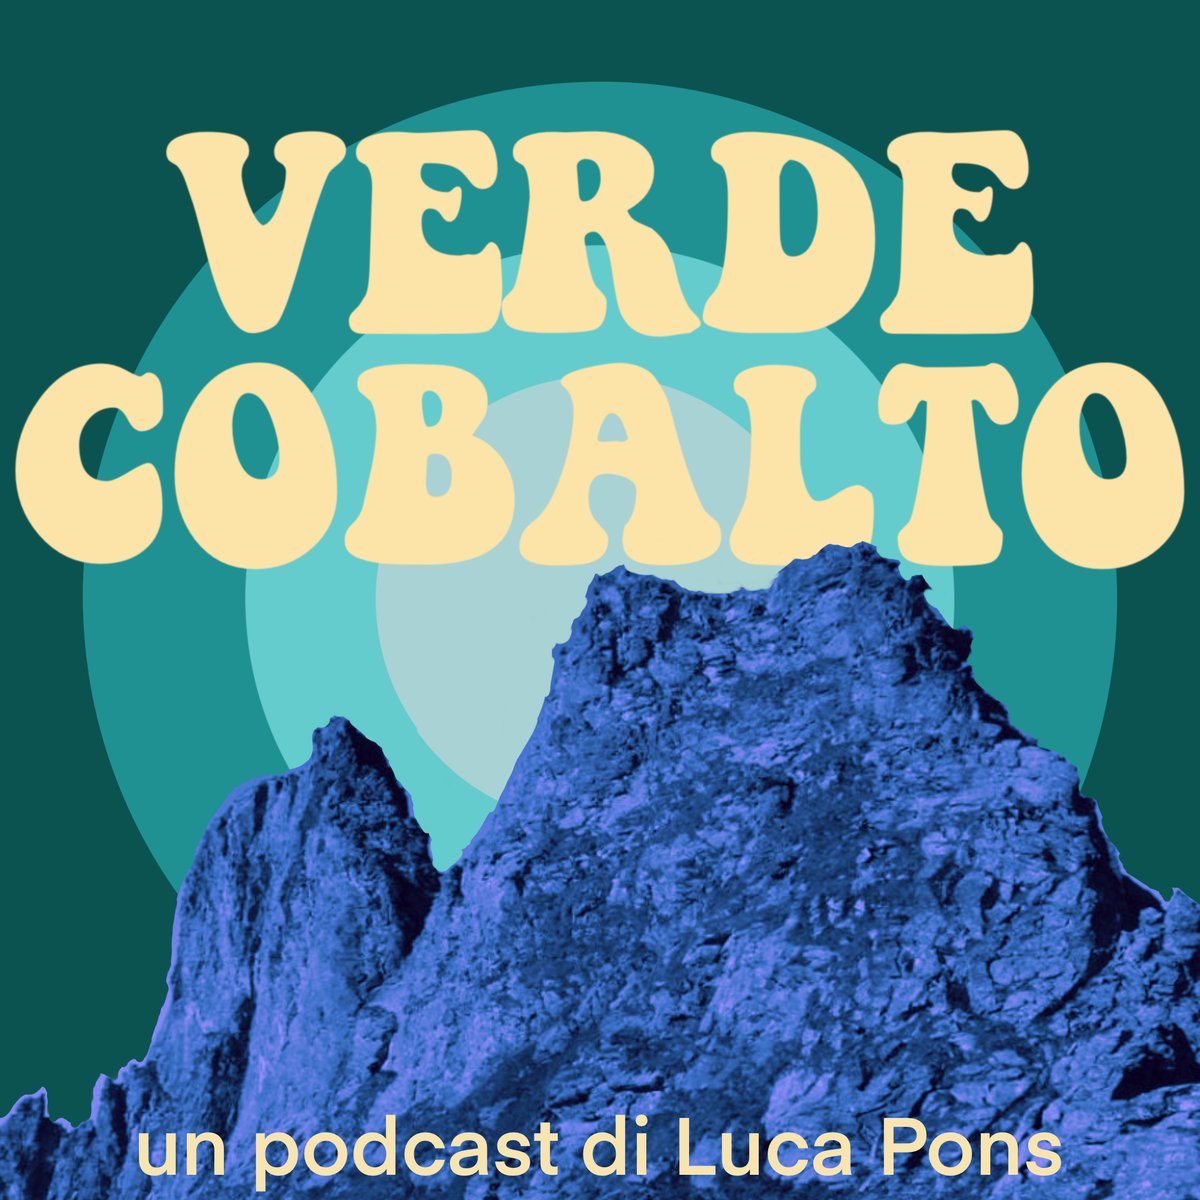 🎙Verde Cobalto è ONLINE Qui il #podcast in 3 puntate👇 Spotify spoti.fi/3Op8xch Apple apple.co/3tPfs6R Spreaker bit.ly/verdecobalto Una multinazionale cerca #cobalto nelle valli di Lanzo. Il mio #viaggio nelle paure, e speranze, dei due paesini coinvolti.